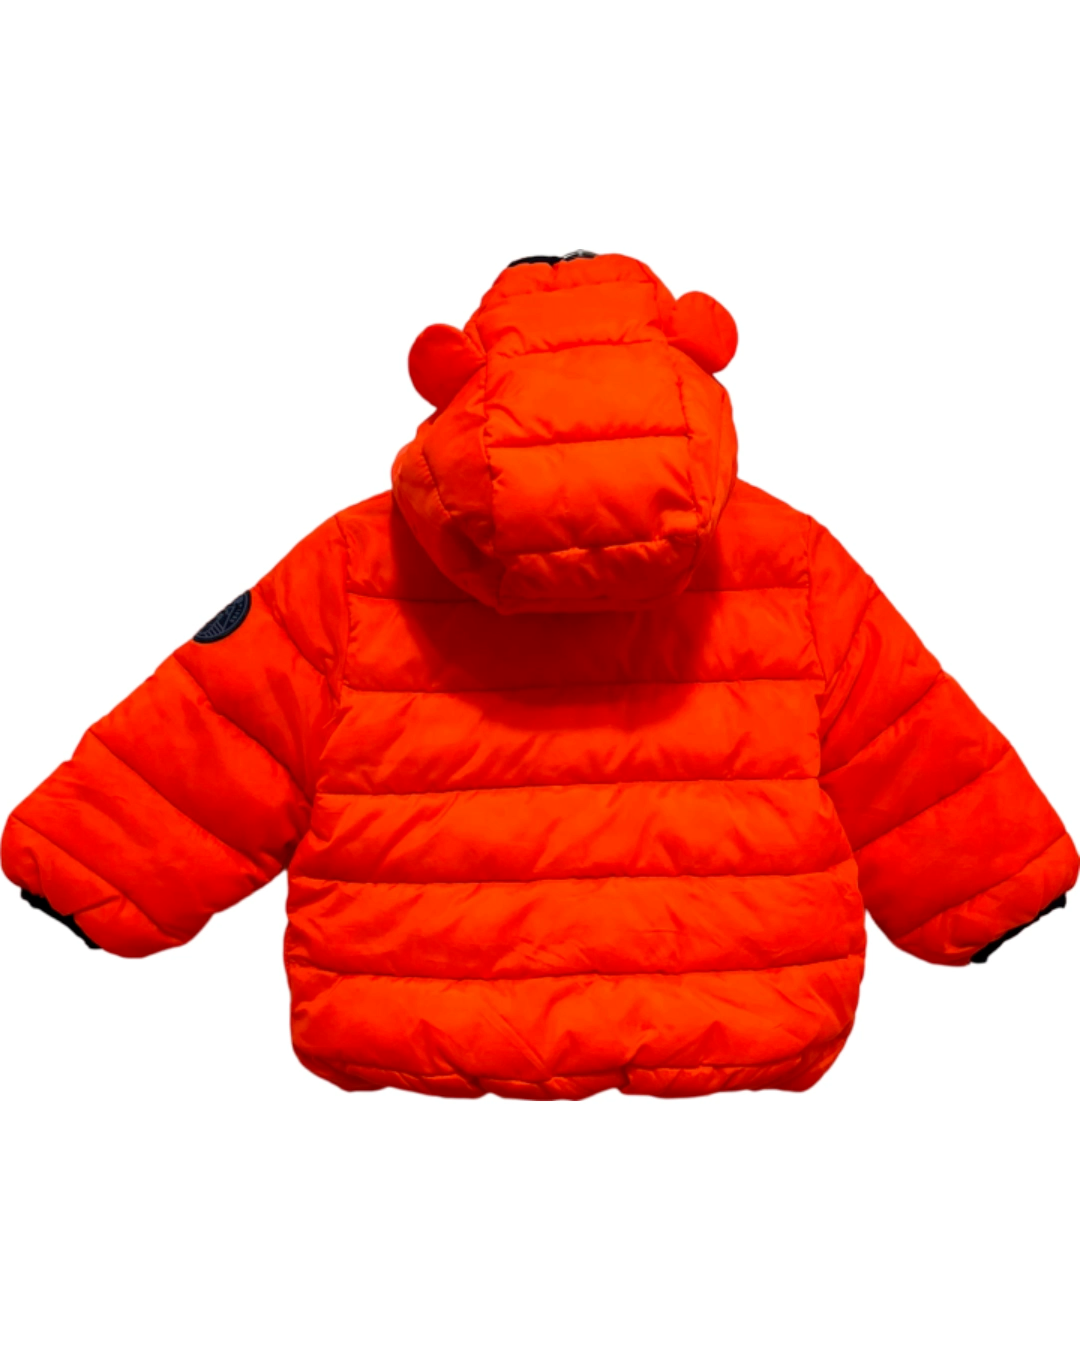 Baby GAP Orange Puffer Jacket (12-18M)